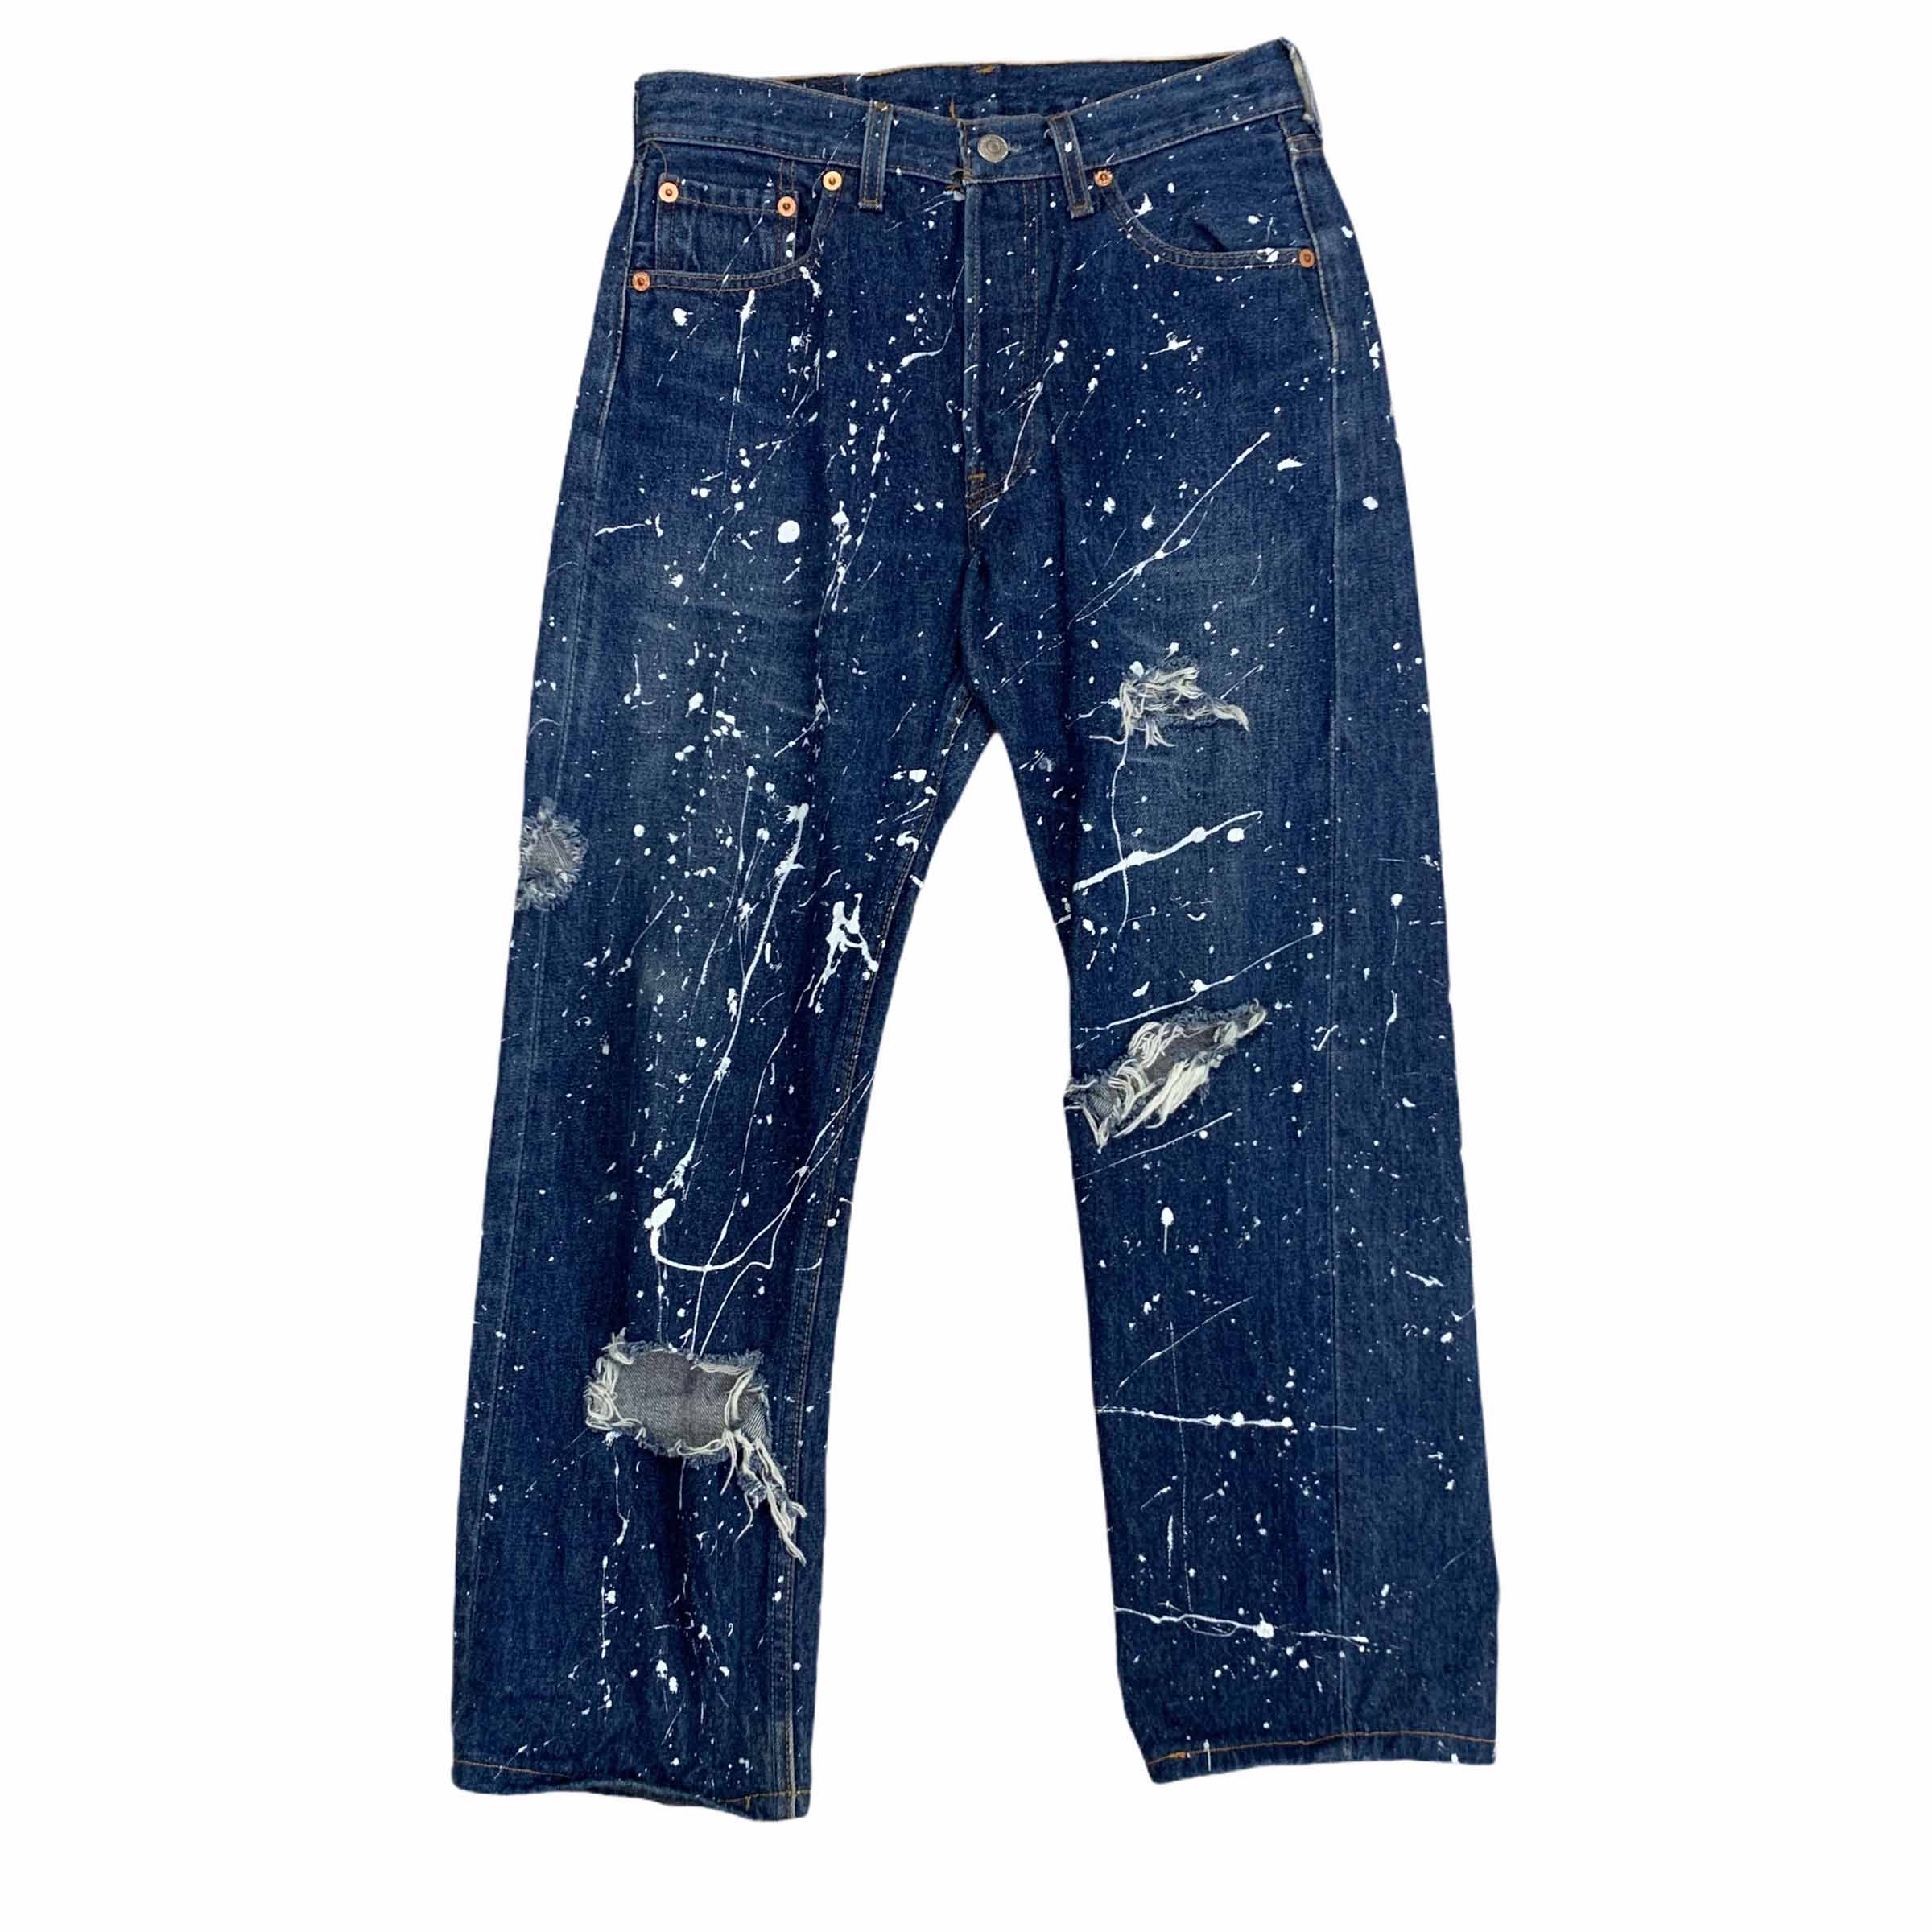 [Levis] (Vintage) 501 Painted Denim pants - Size 29/36